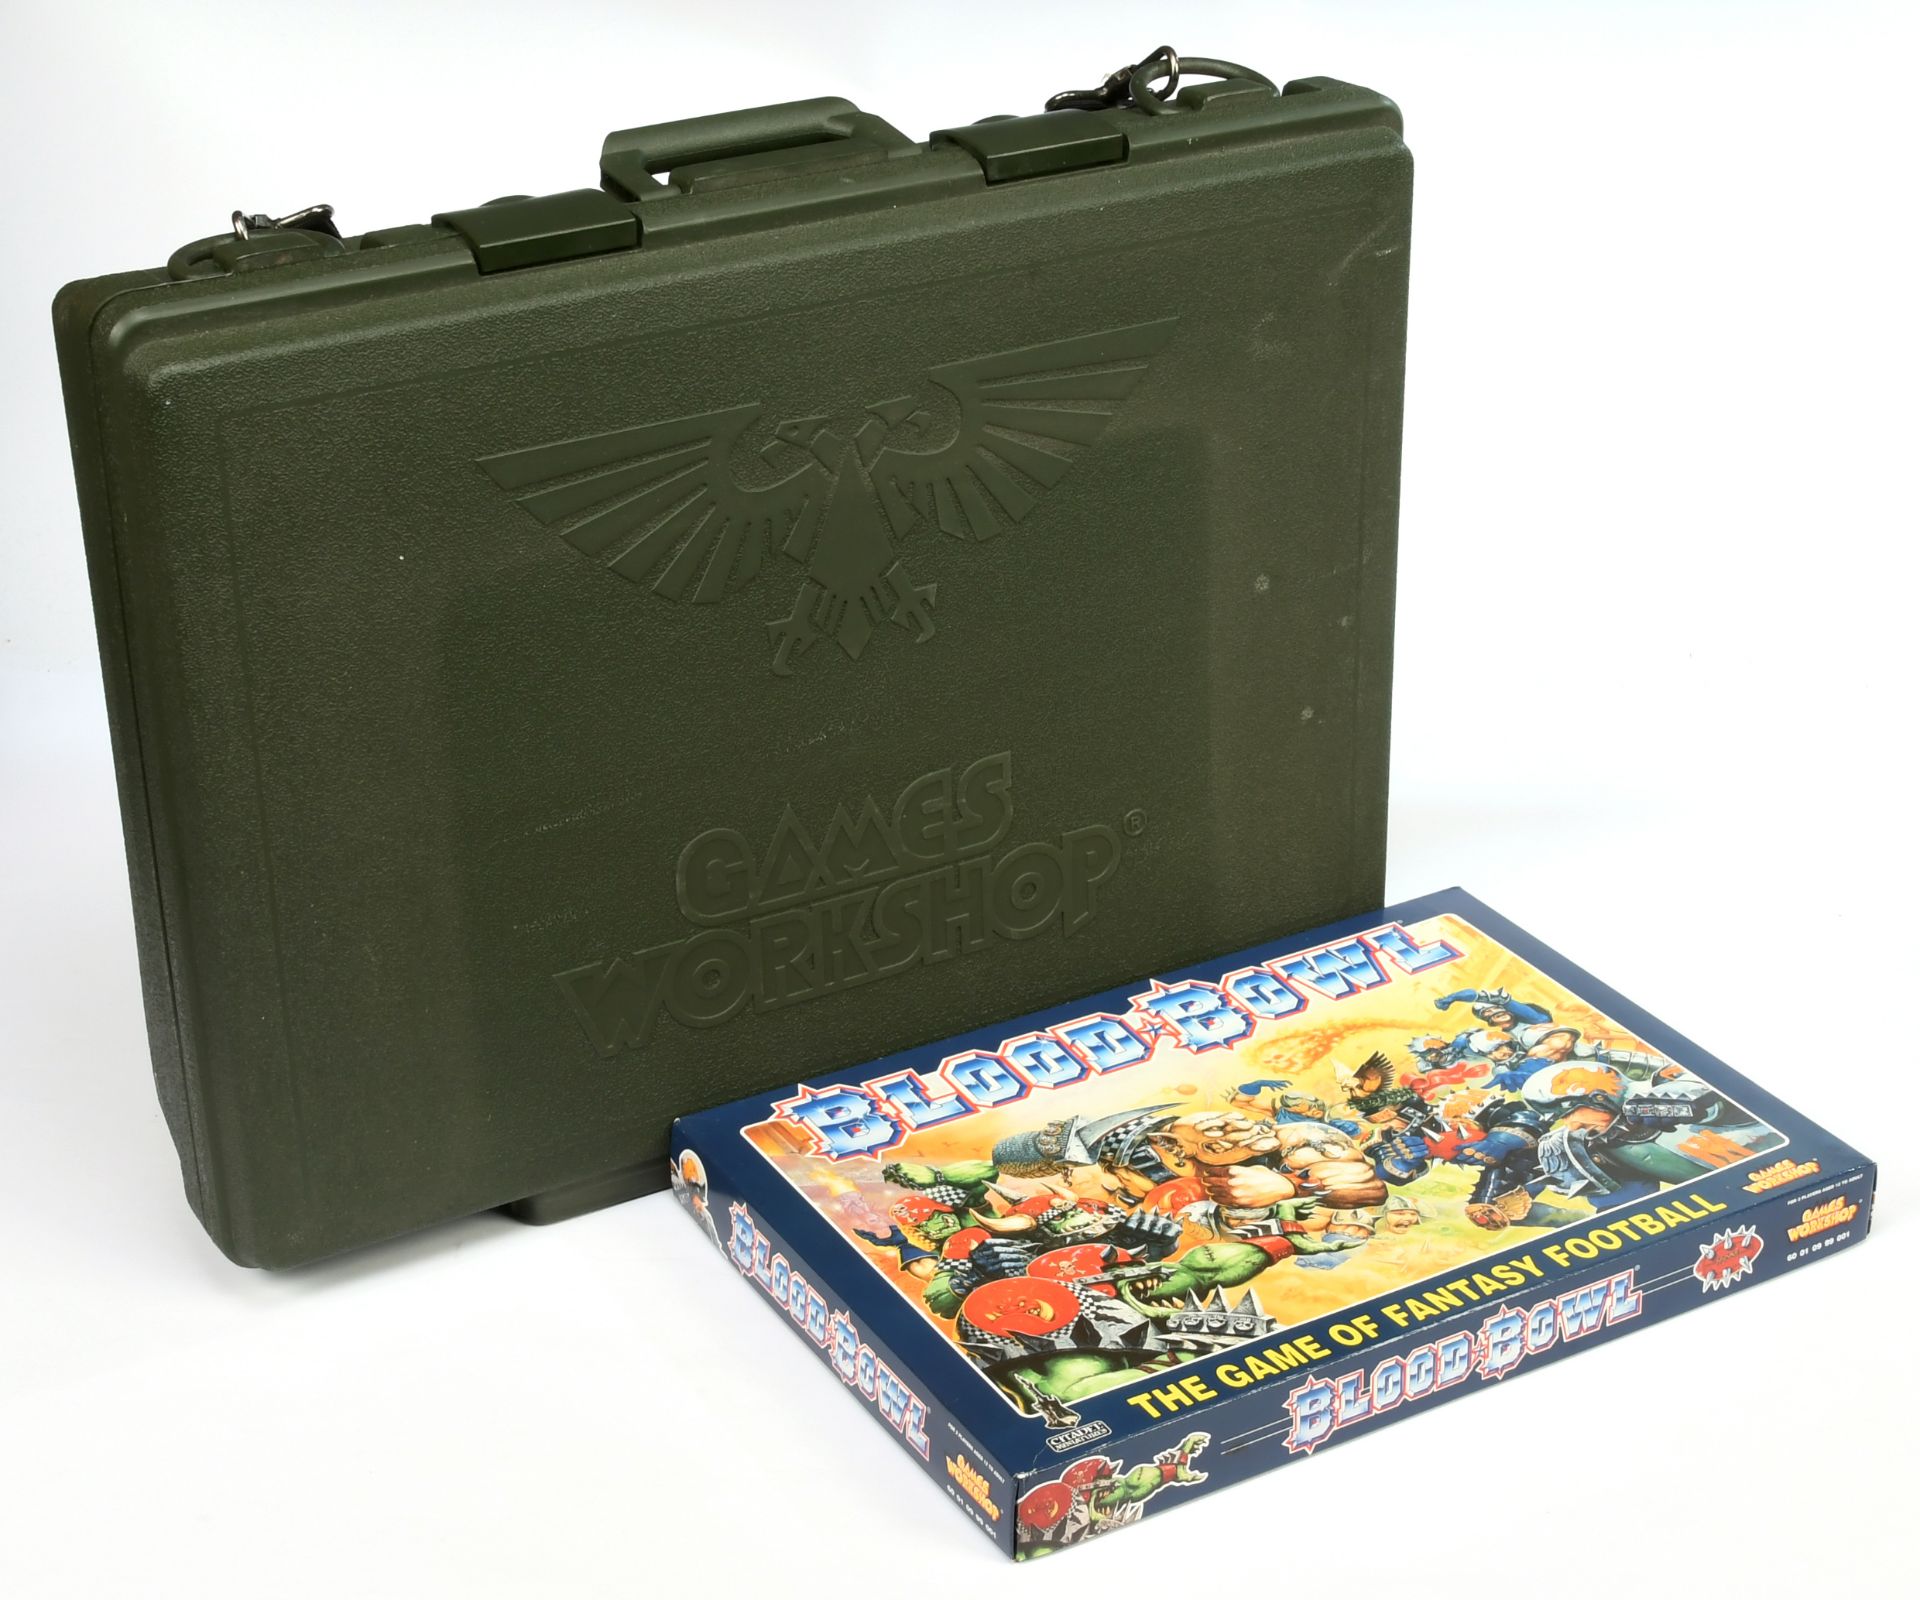 Games Workshop / Citadel, Blood Bowl game & hard plastic carry case